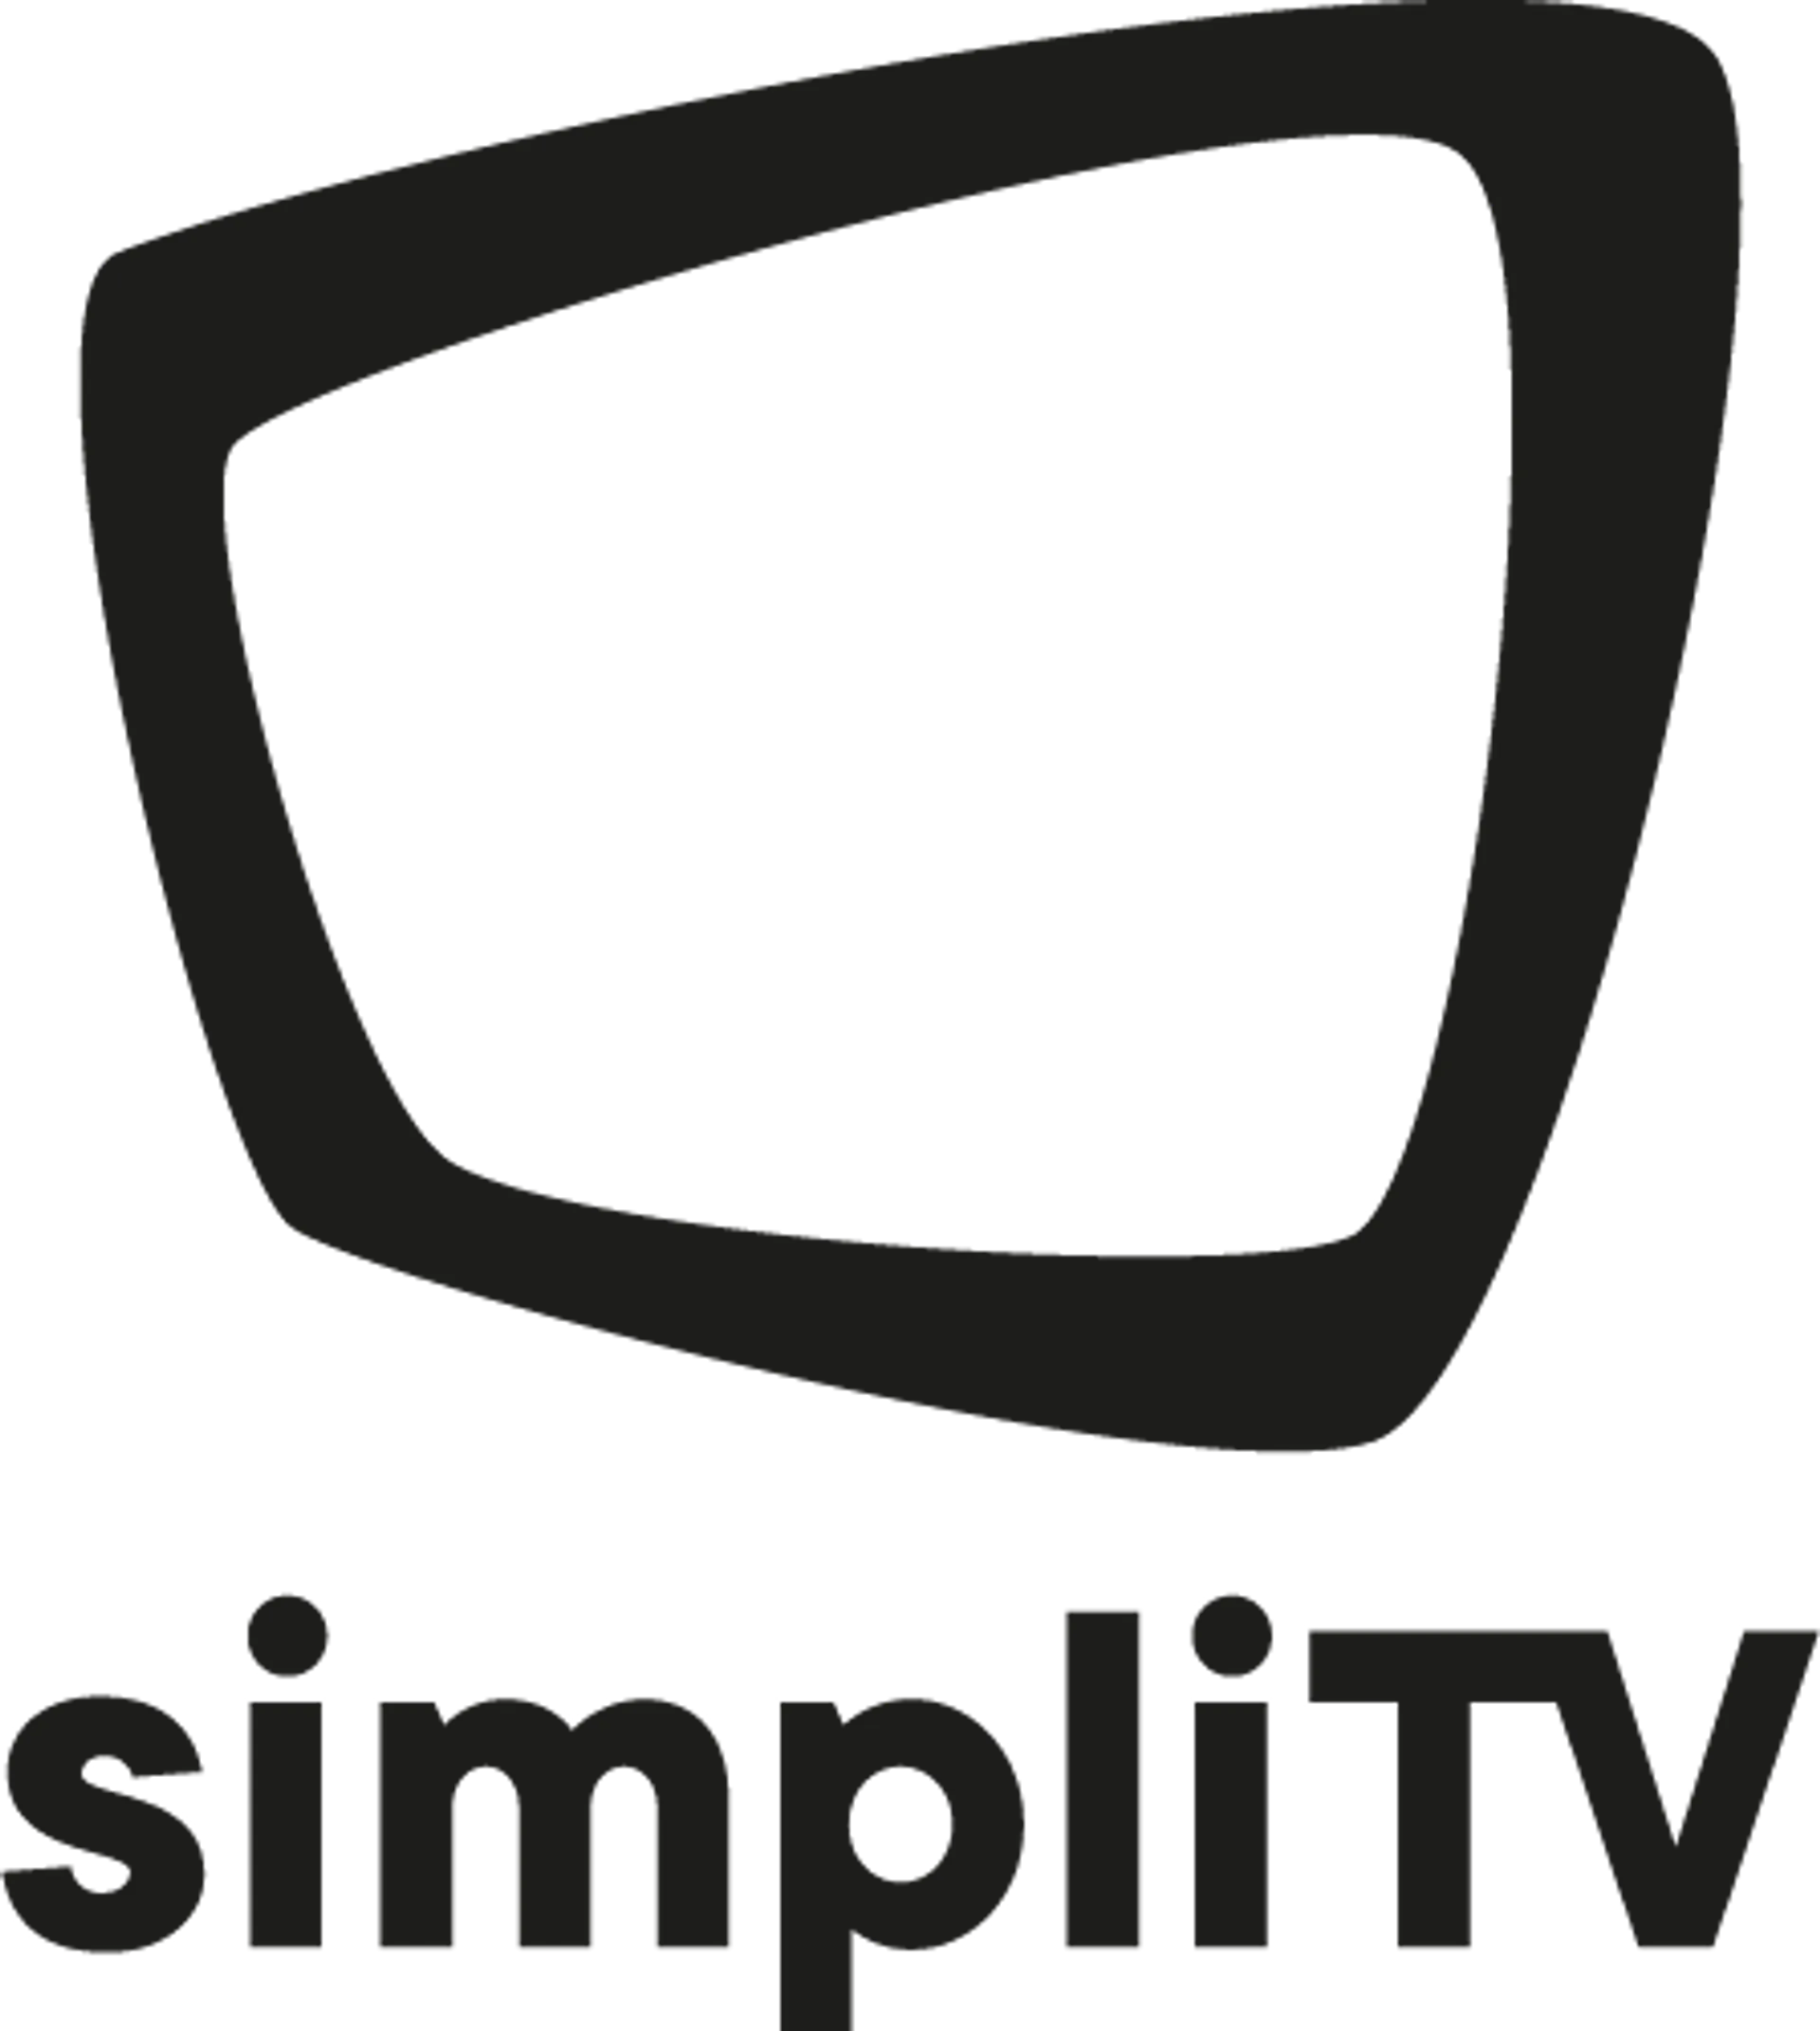 SIMPLITV logo die aktuell Flugblatt